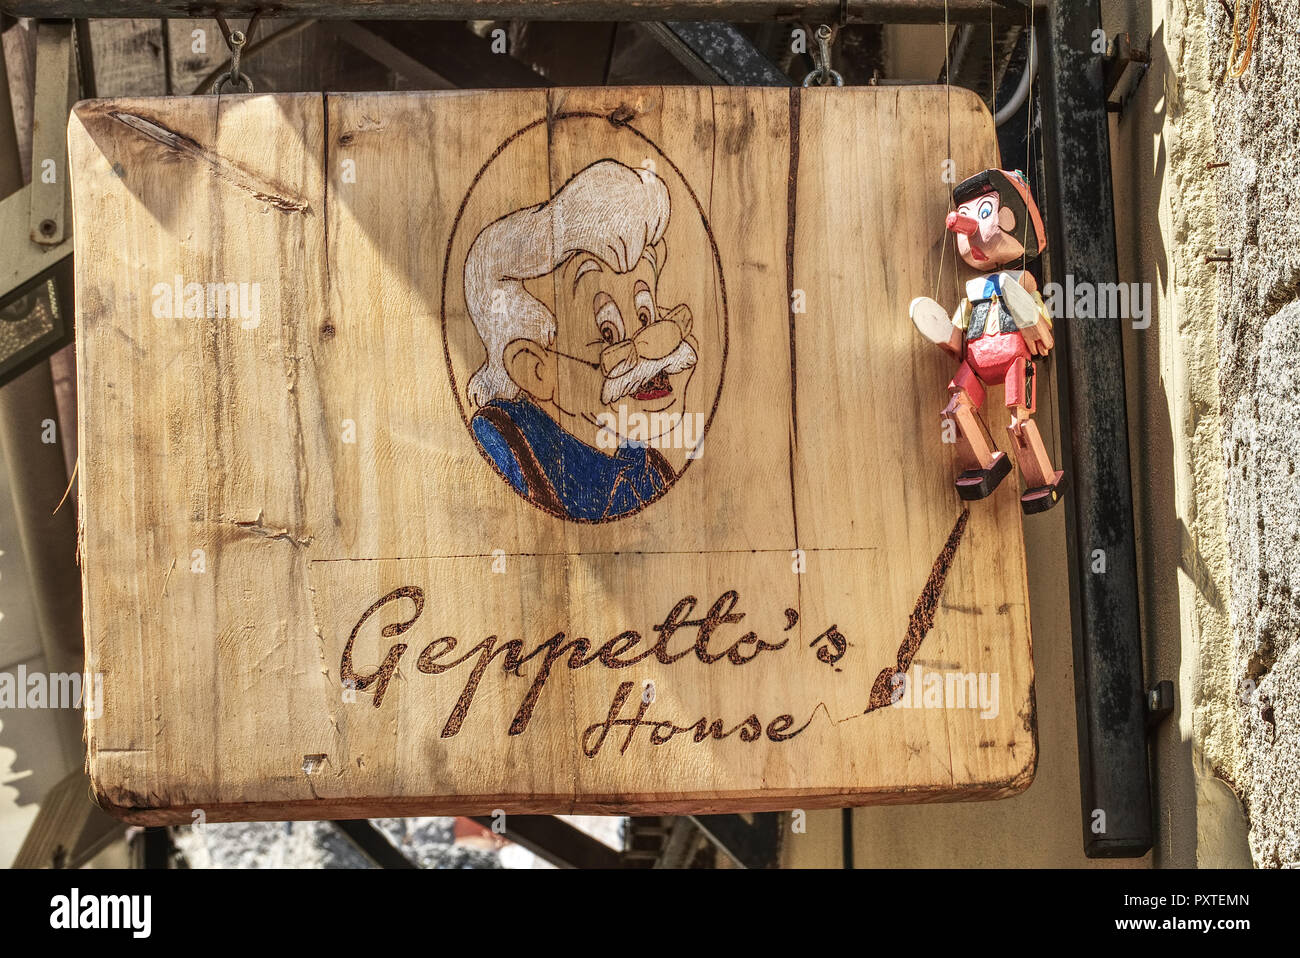 Pinoccio und Gepetto, Schild und Puppe Stock Photo